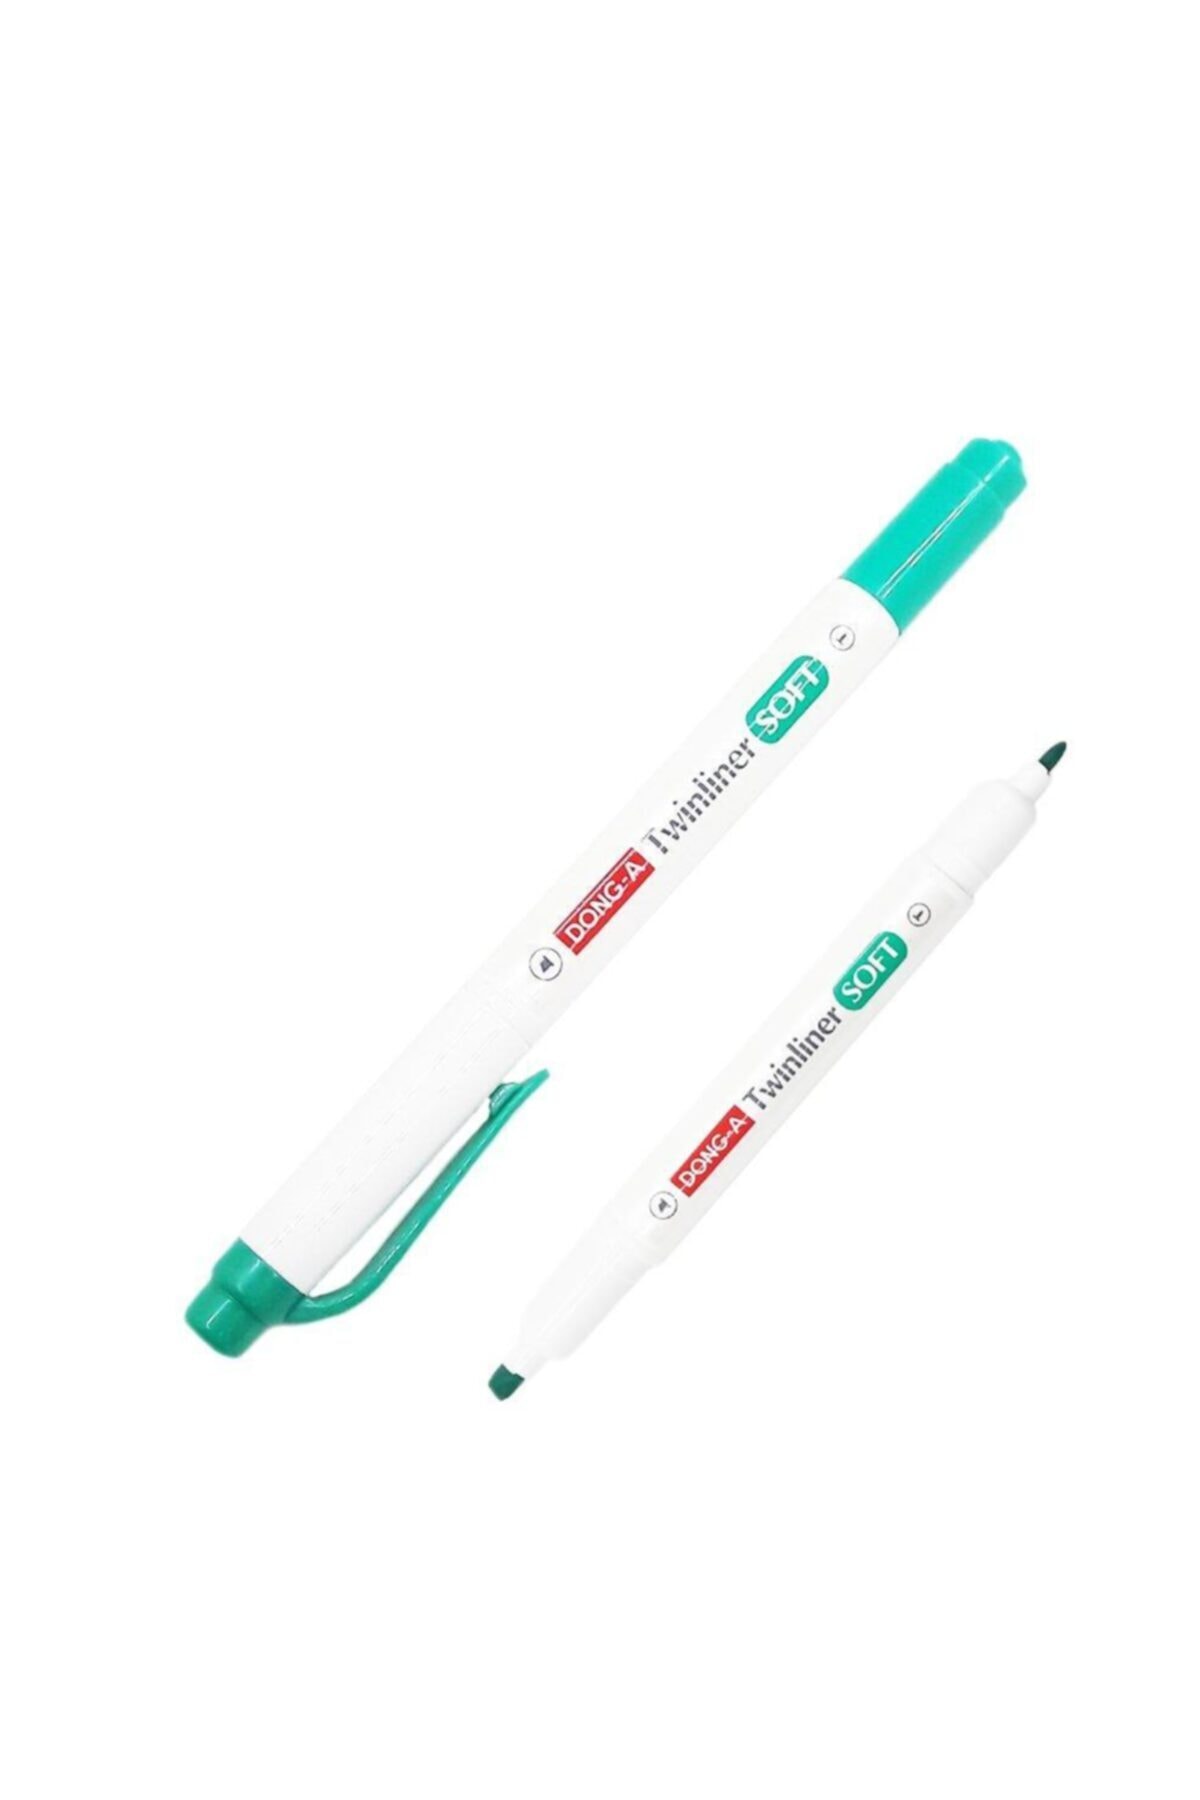 ปากกาสี Twinline #52  สีเขียวอมน้ำเงิน